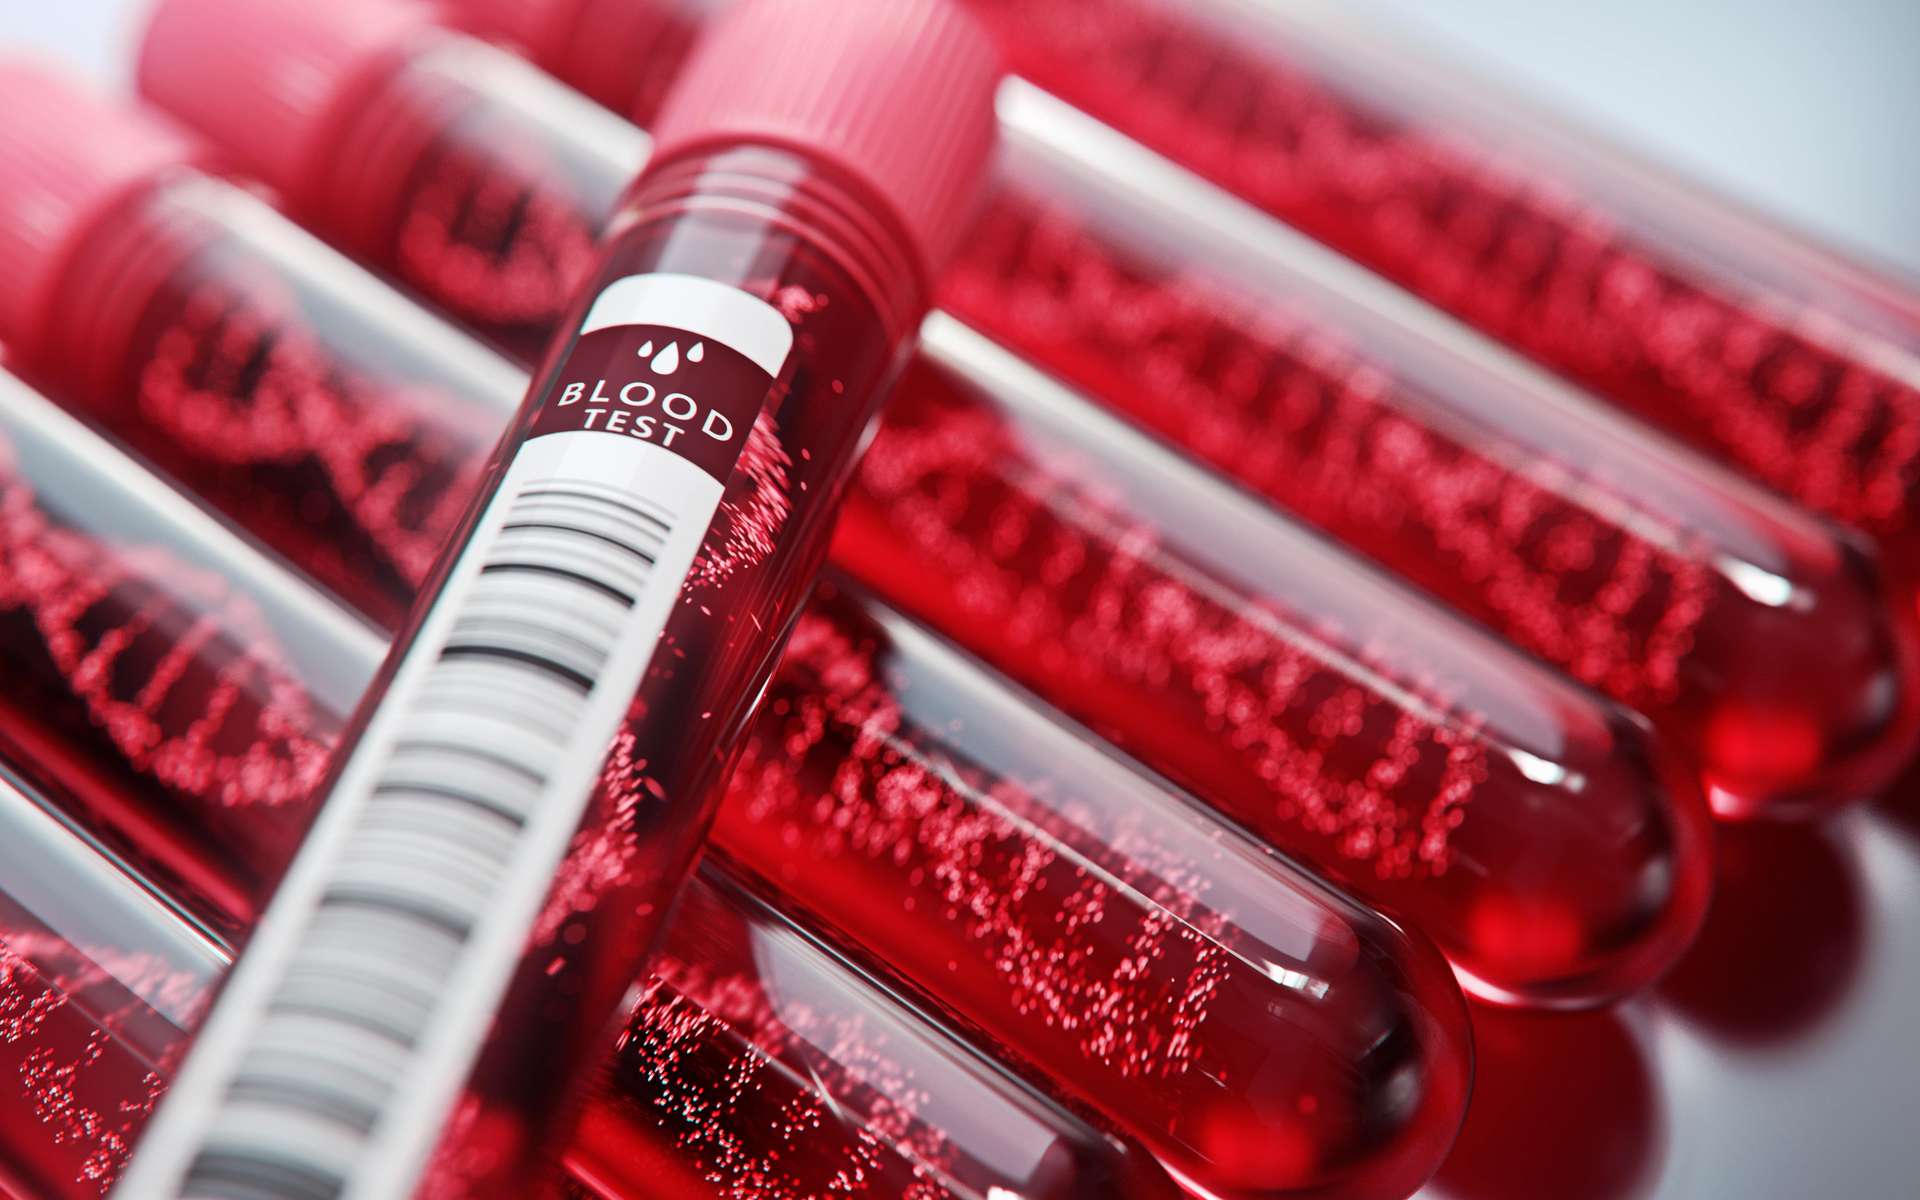 Le sang rouge proviendrait d'un seul gène ancestral. © Connect world, Adobe Stock